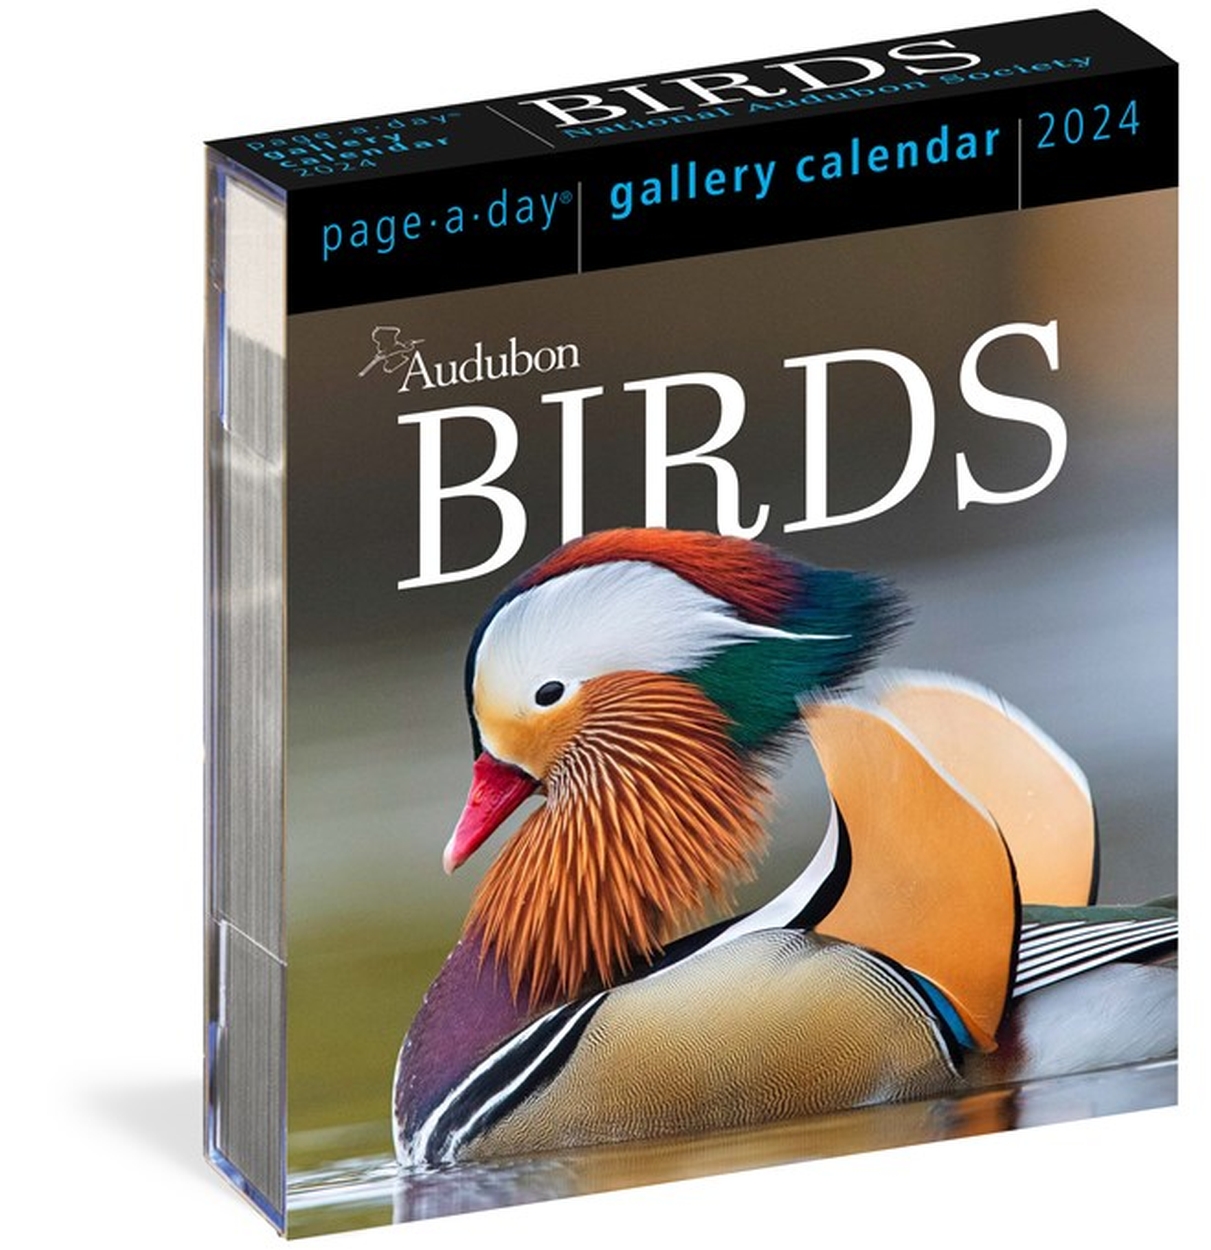 Audubon Birds PageADay Gallery Calendar 2024 by Workman Calendars